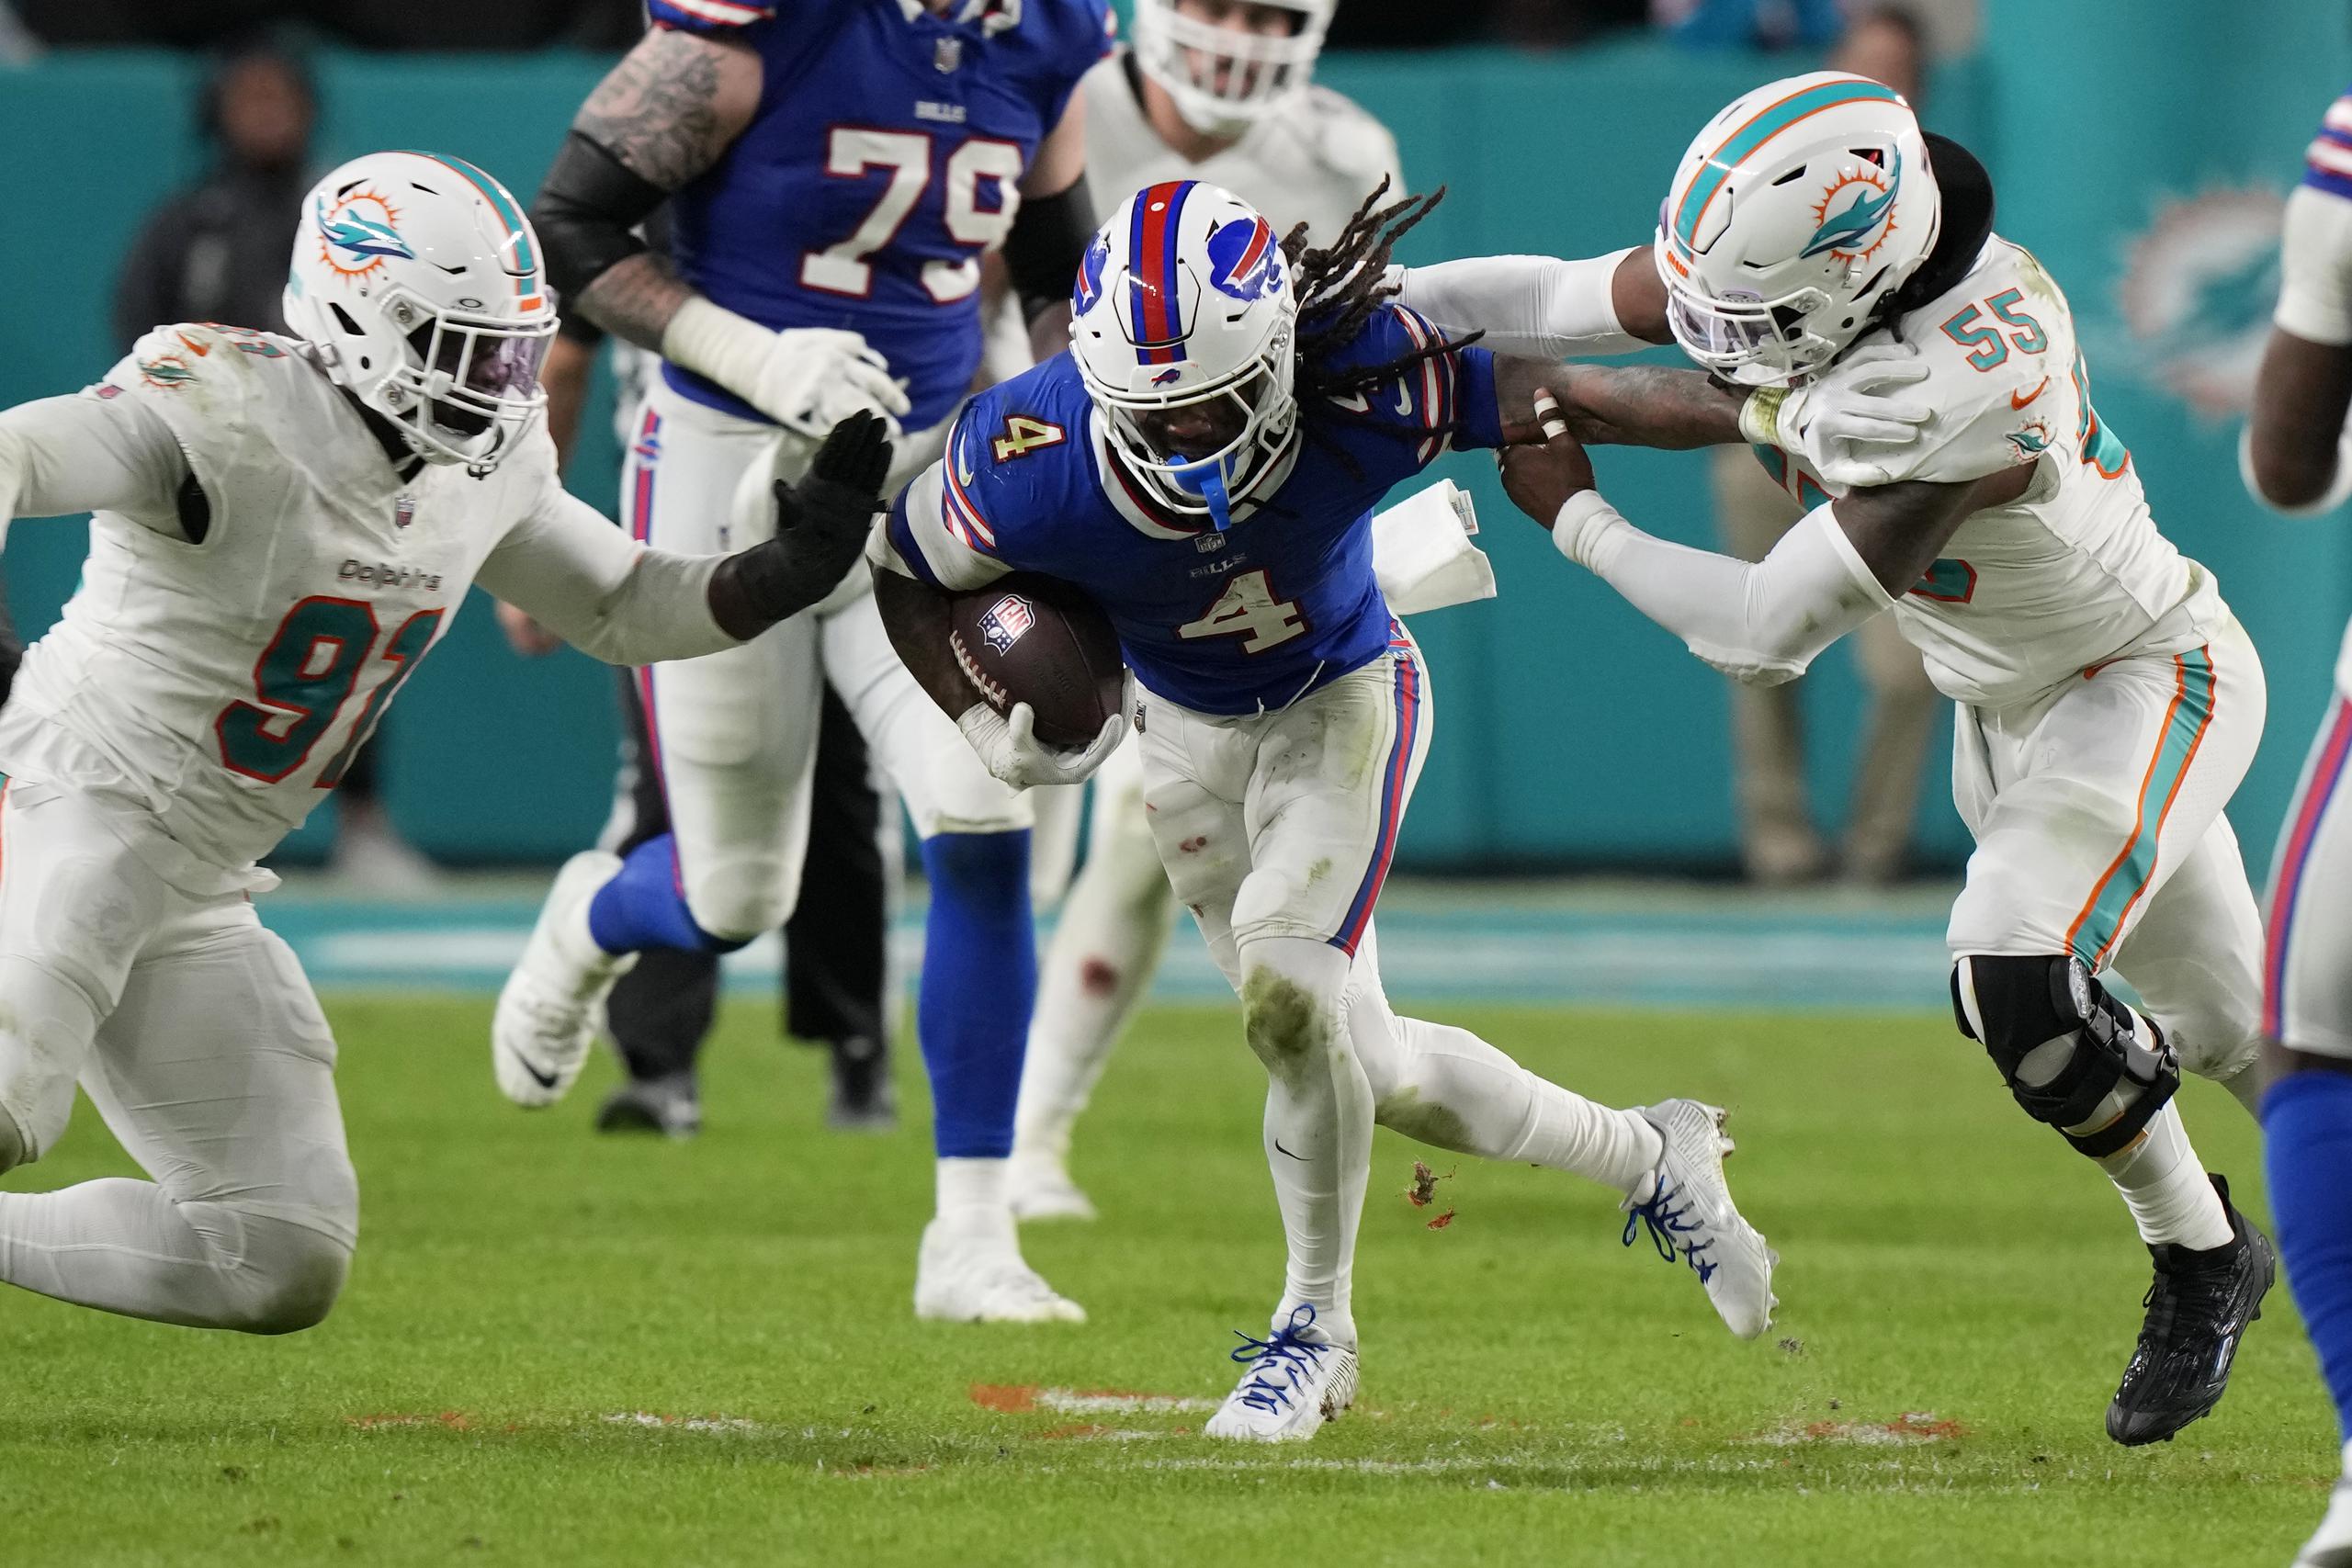 El defensive end de los Dolphins de Miami, Emmanuel Ogbah, y el linebacker Jerome Baker intentan derribar al corredor de los Bills de Búfalo James Cook en el encuentro del domingo.